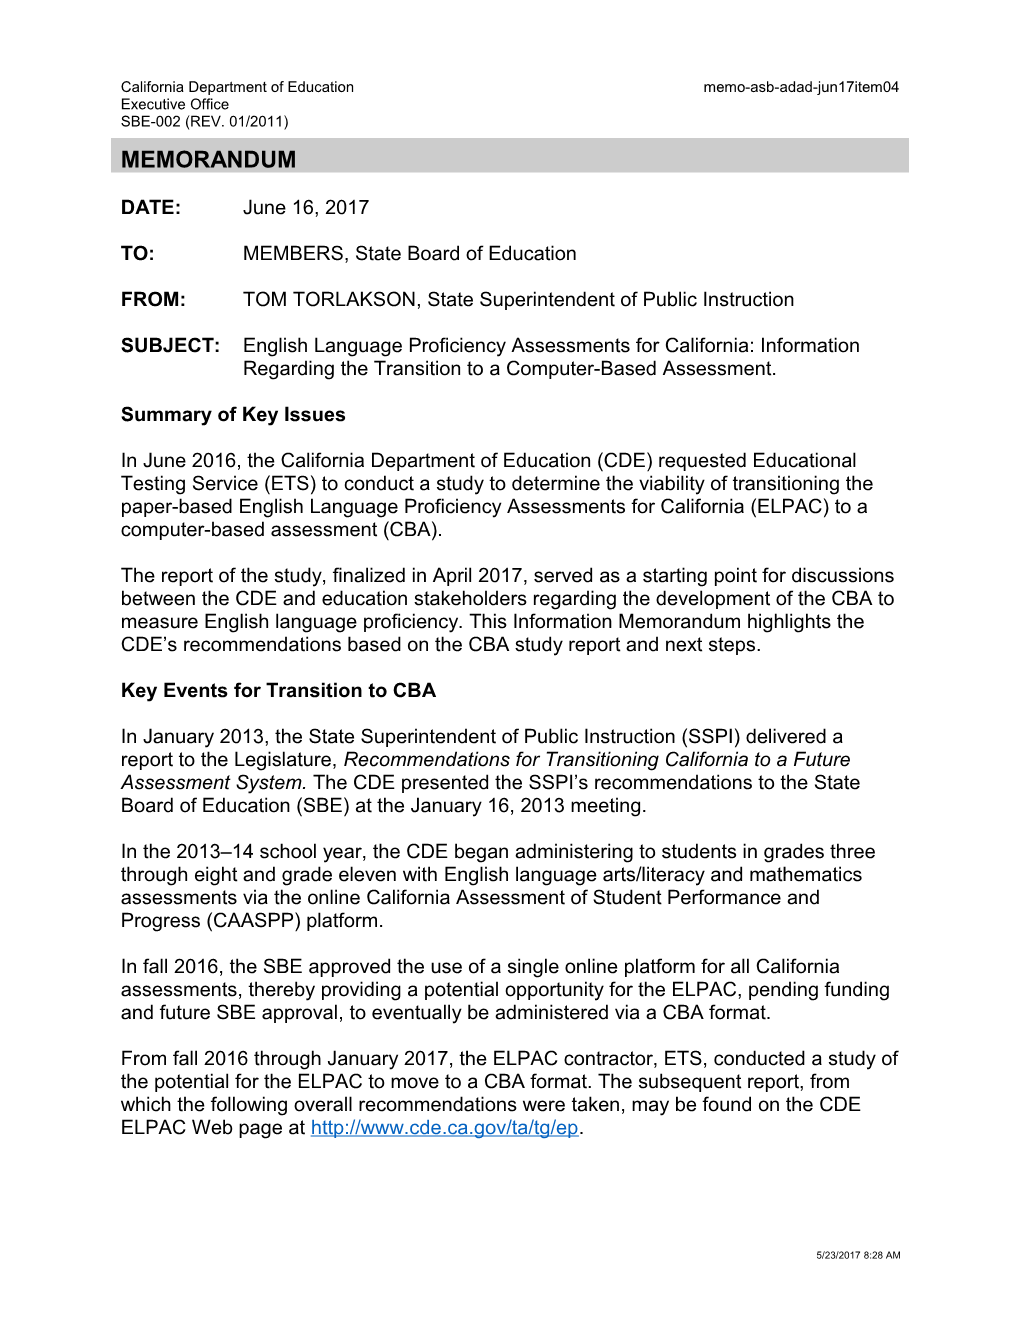 June 2017 Memo ADAD Item 04 - Information Memorandum (CA State Board of Education)